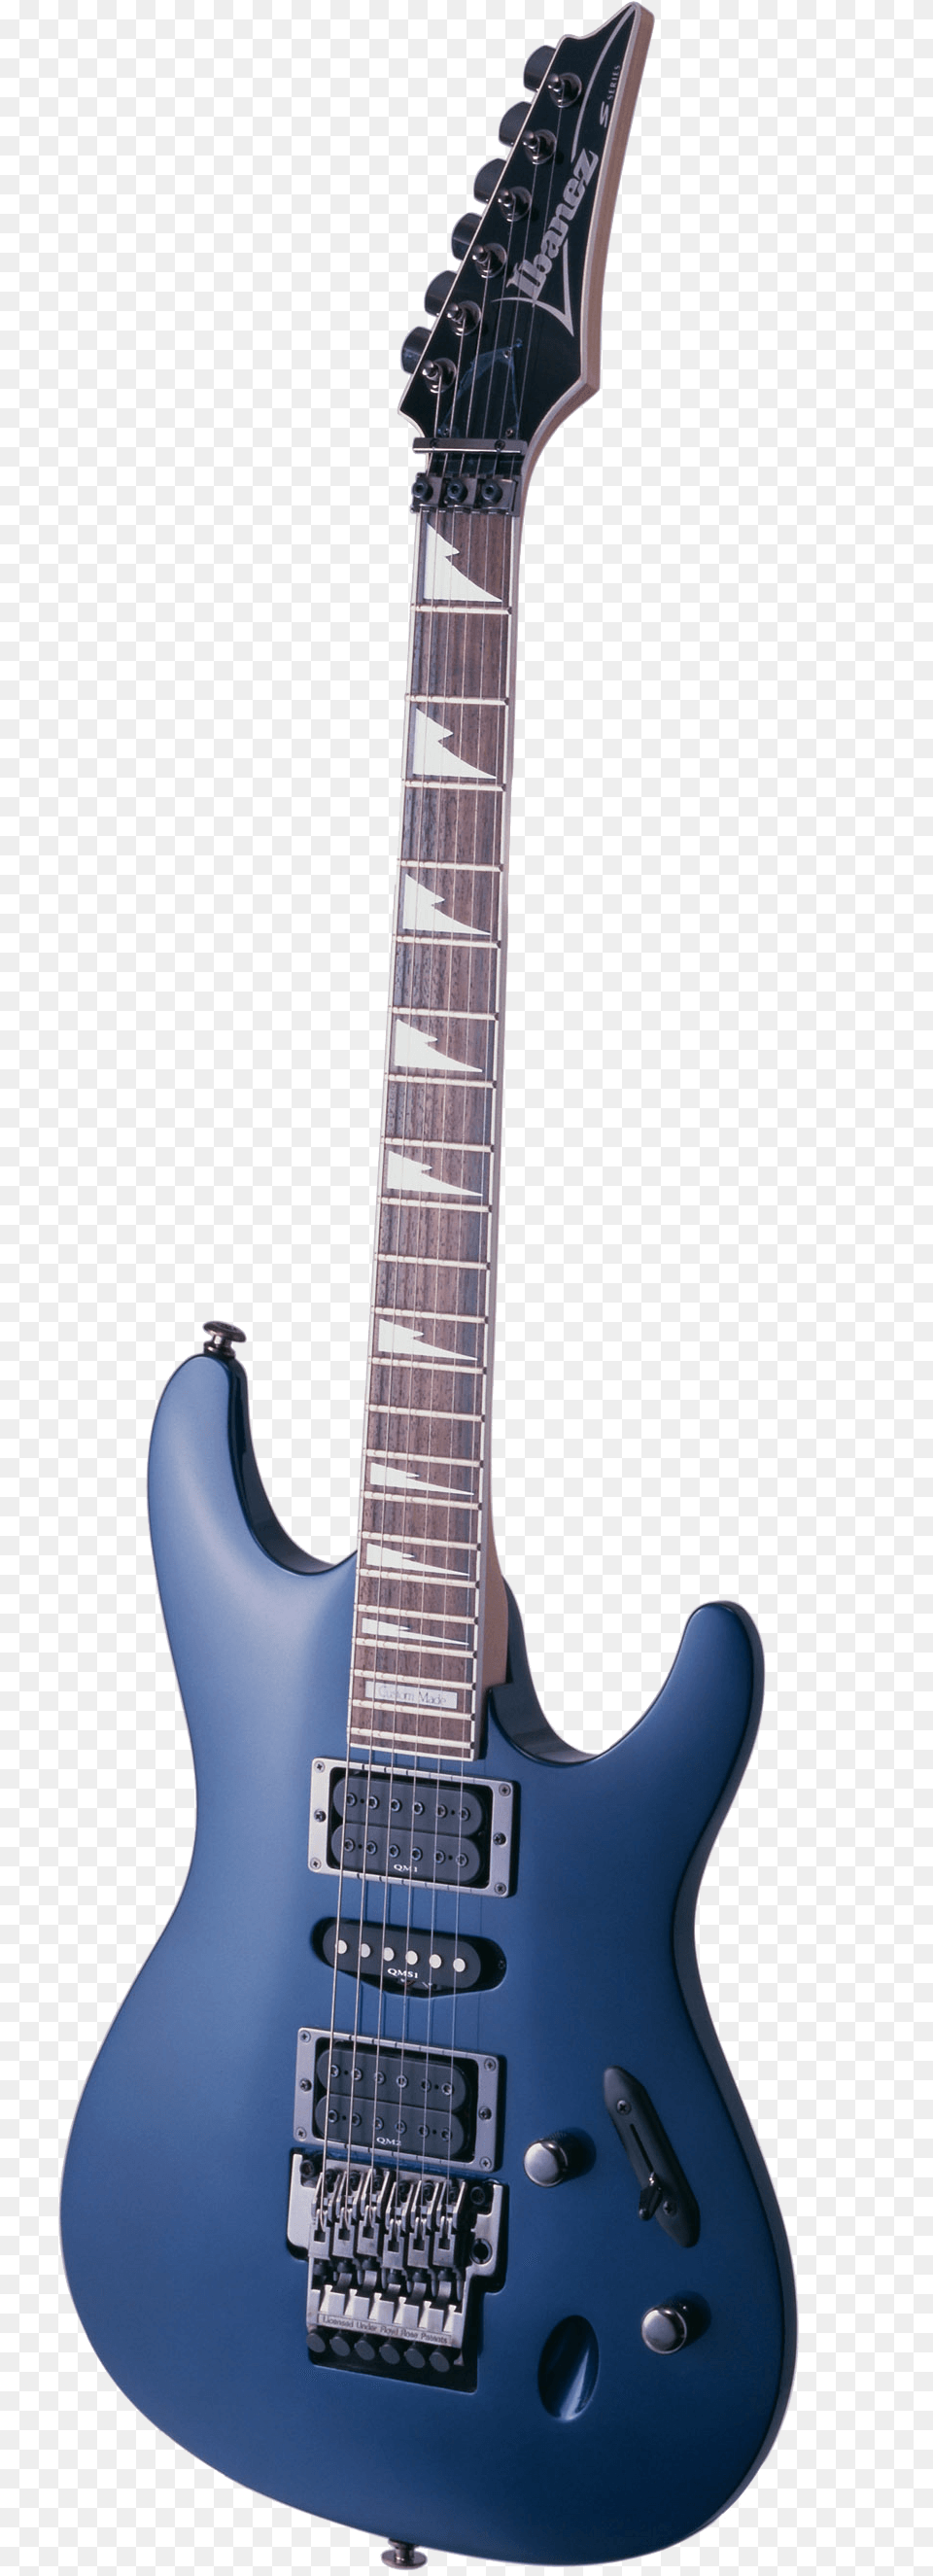 Guitar Clipart Metal Guitar, Electric Guitar, Musical Instrument Free Png